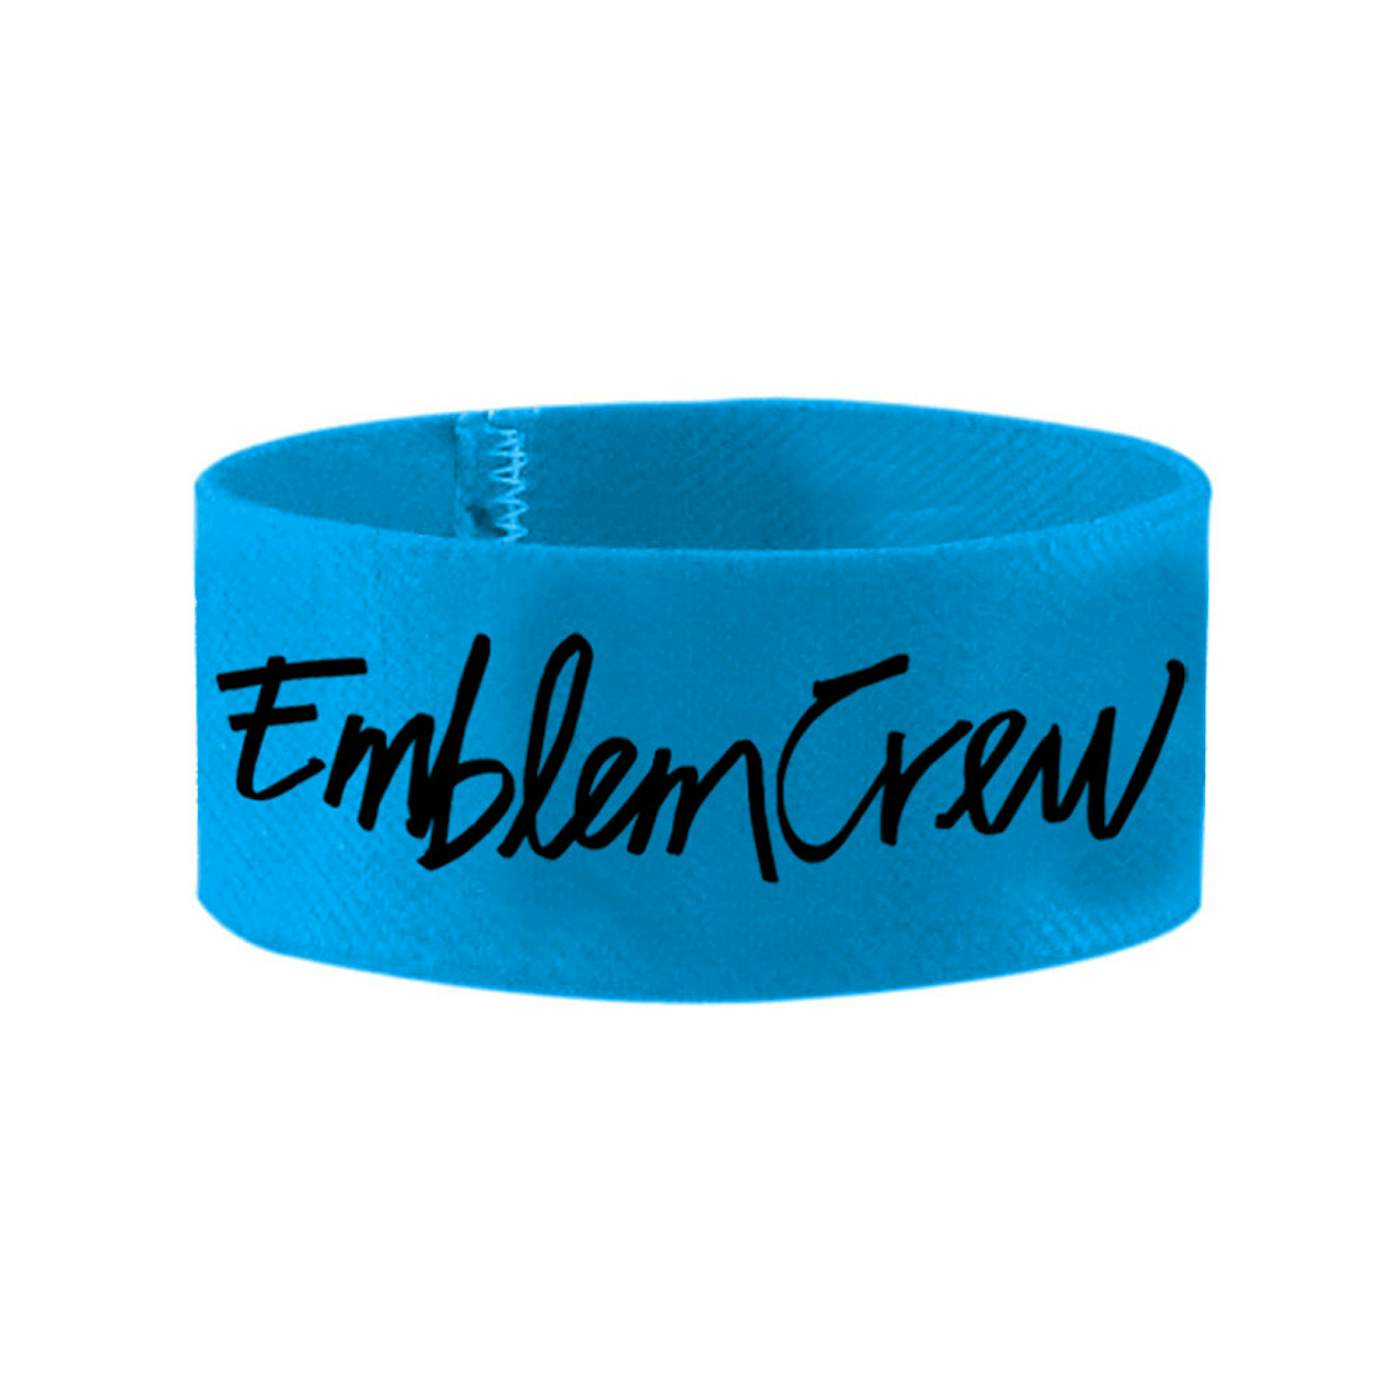 Emblem3 Emblem Crew Wristband